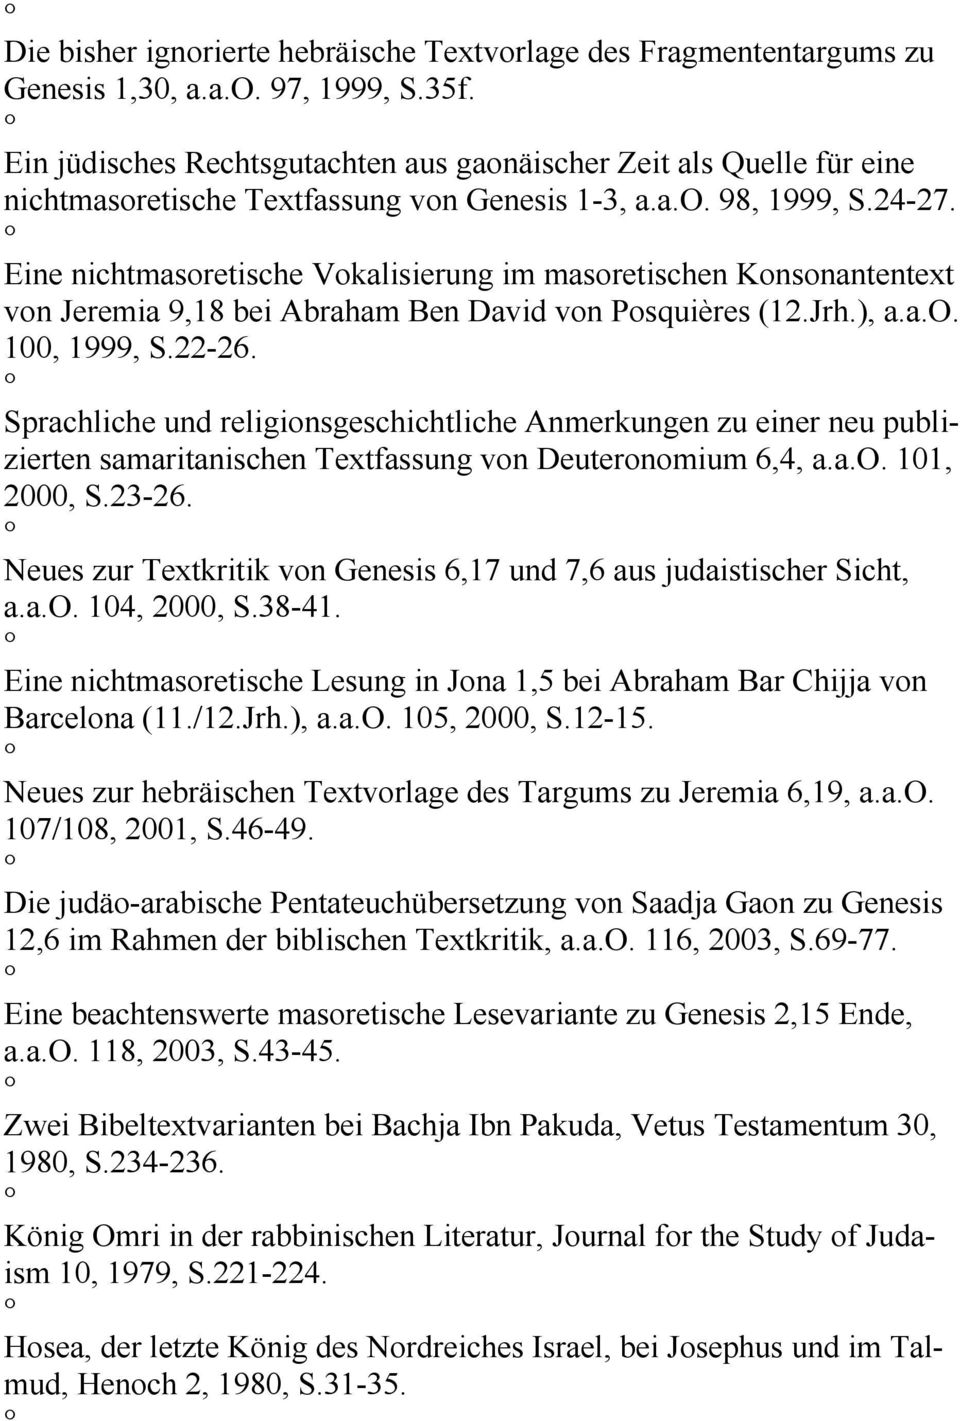 Eine nichtmasoretische Vokalisierung im masoretischen Konsonantentext von Jeremia 9,18 bei Abraham Ben David von Posquières (12.Jrh.), a.a.o. 100, 1999, S.22-26.